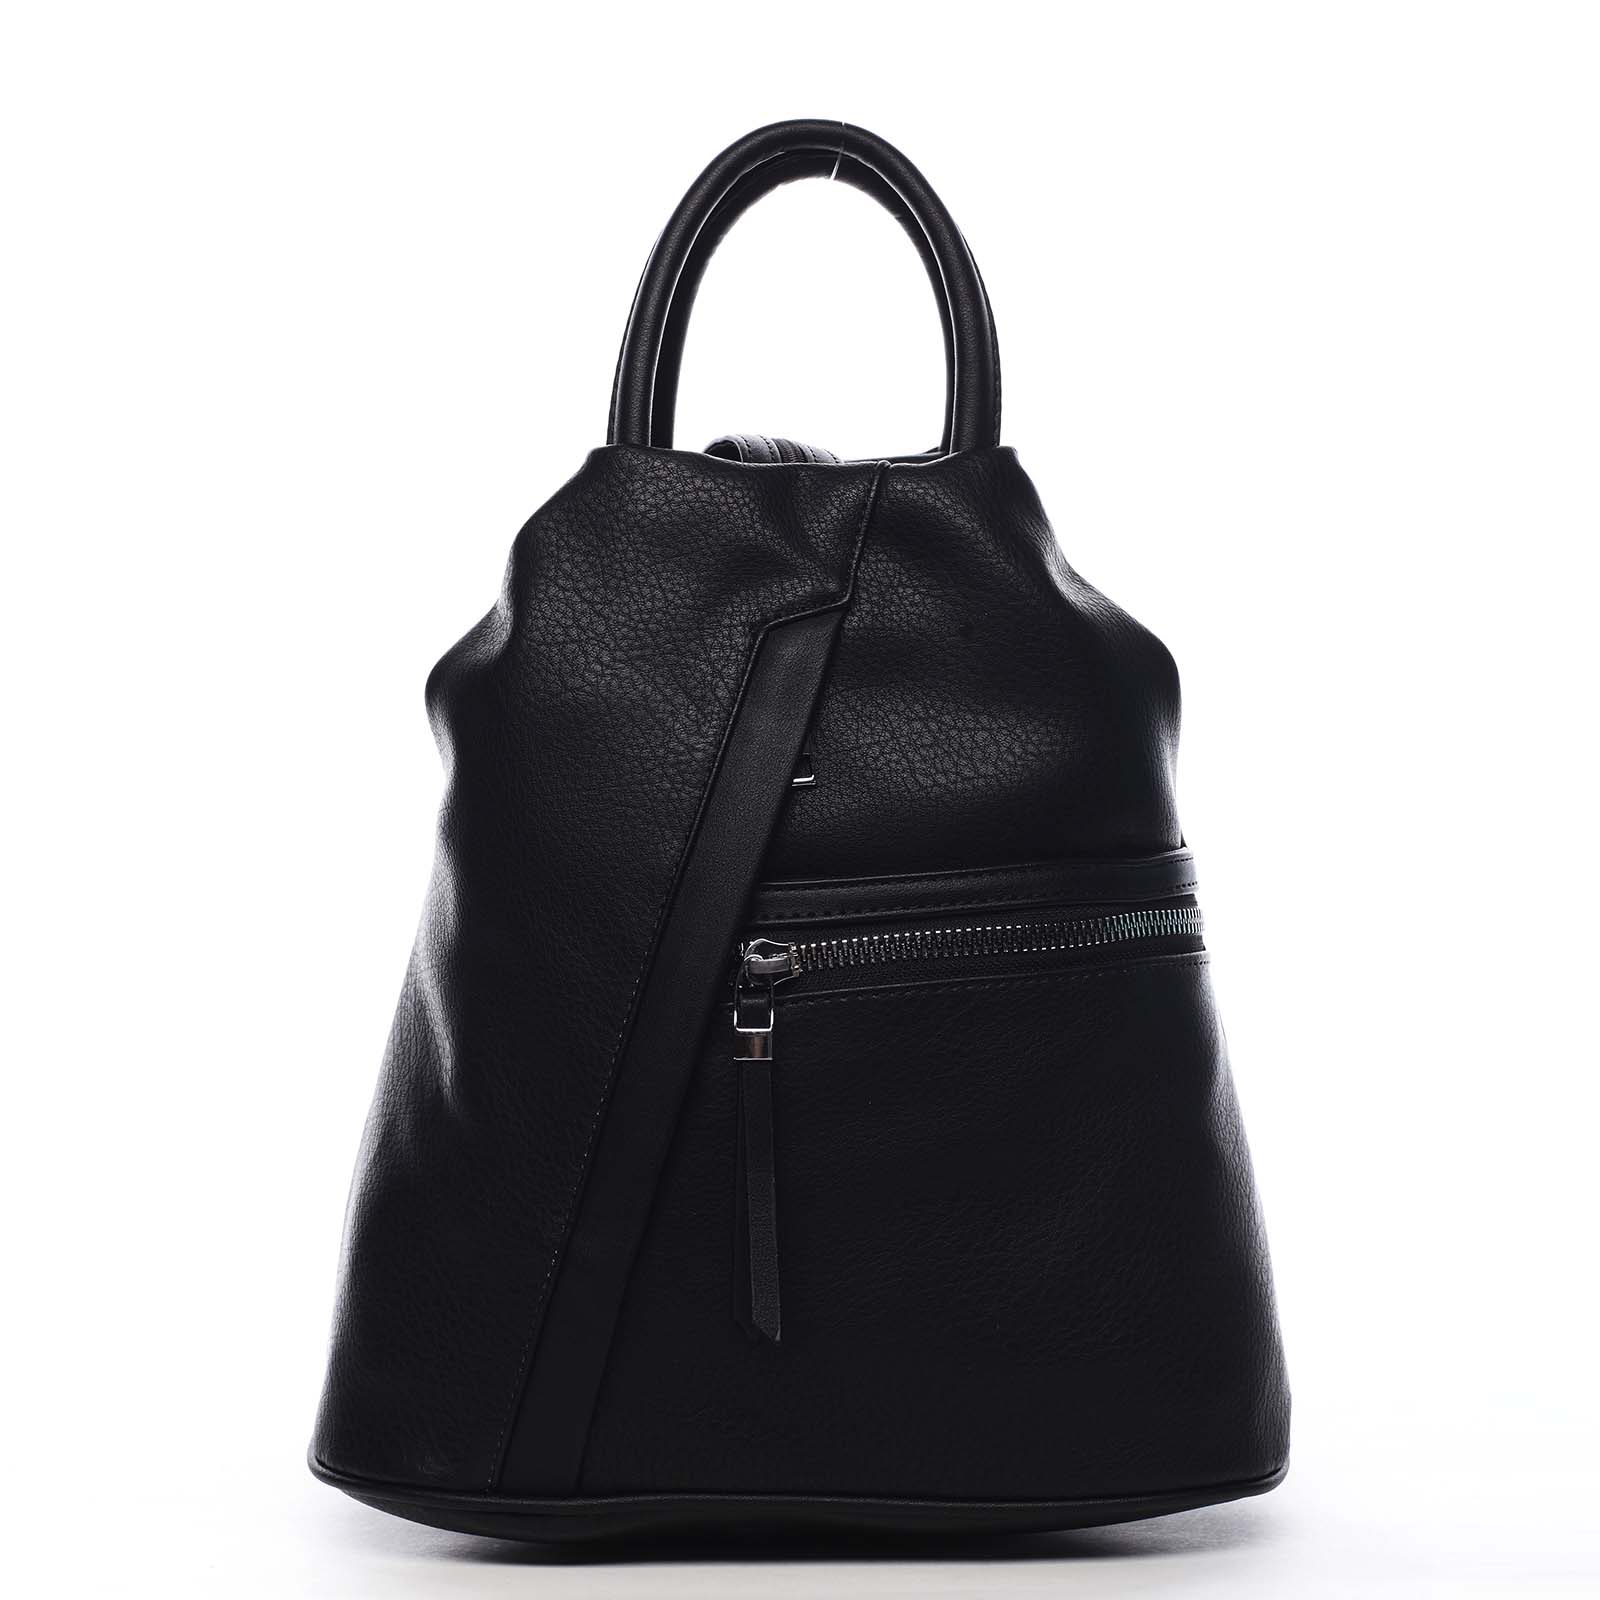 Originálny dámsky batoh kabelka čierny - Romina Imvelaphi